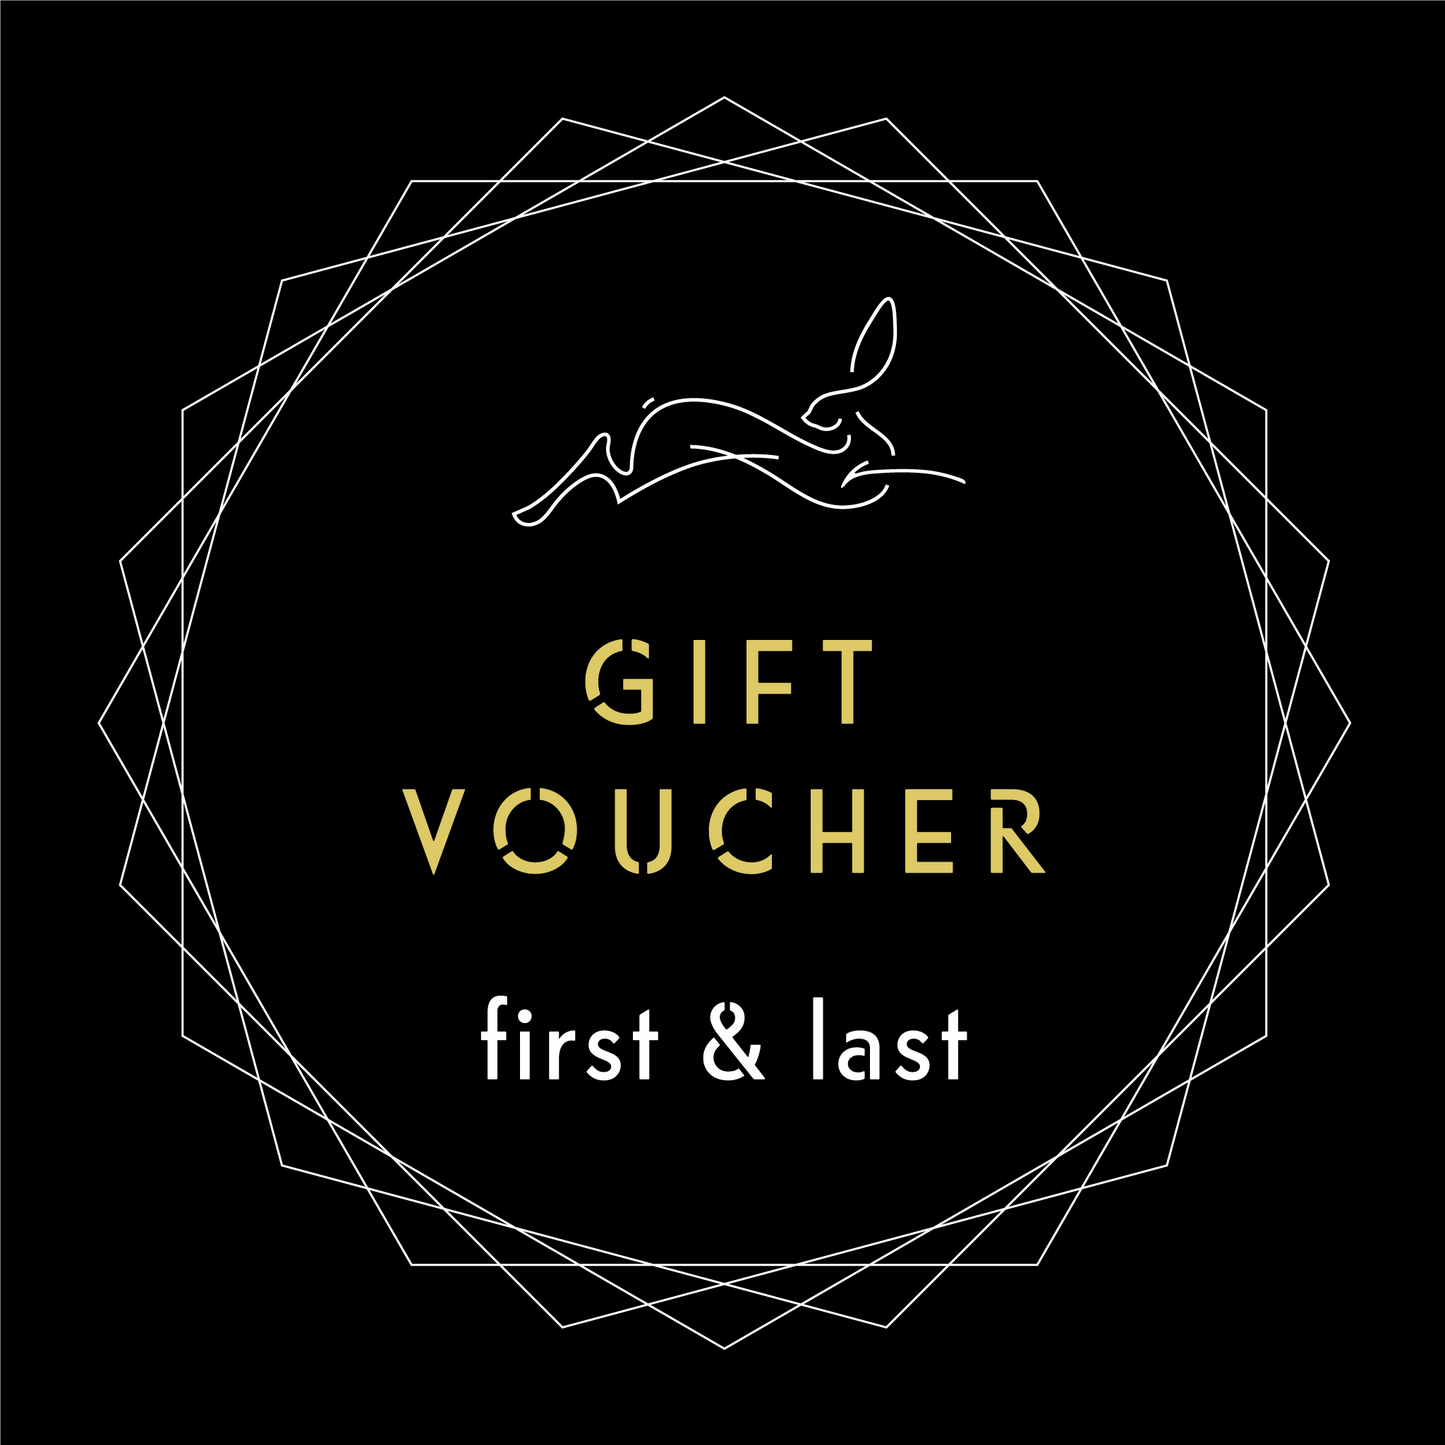 First & Last Gift Voucher